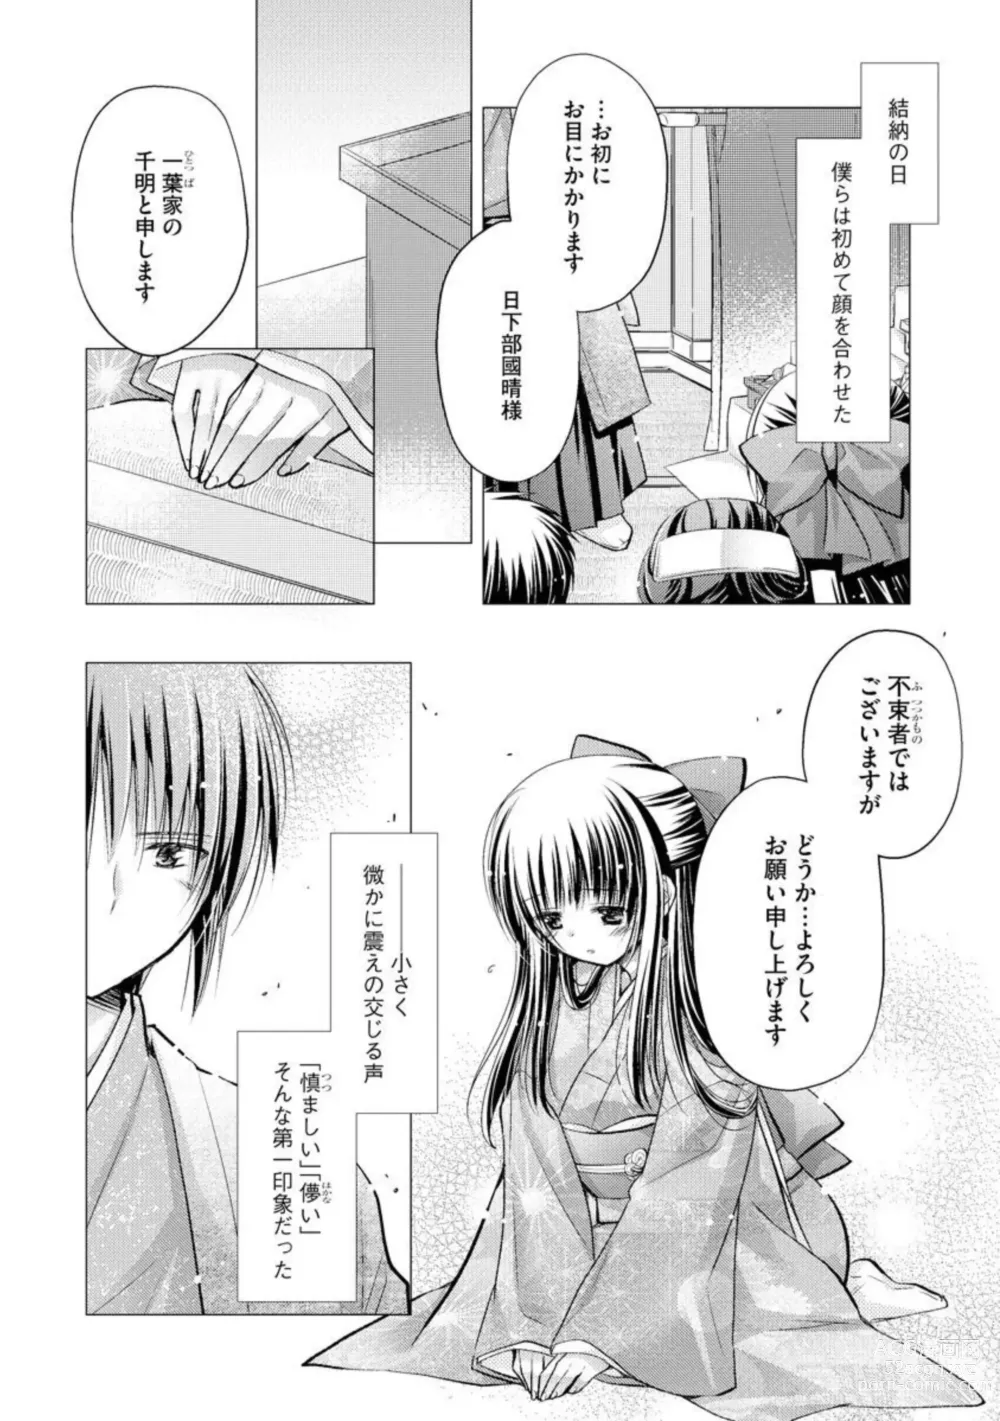 Page 6 of manga Aishin Retoroshizumu 1